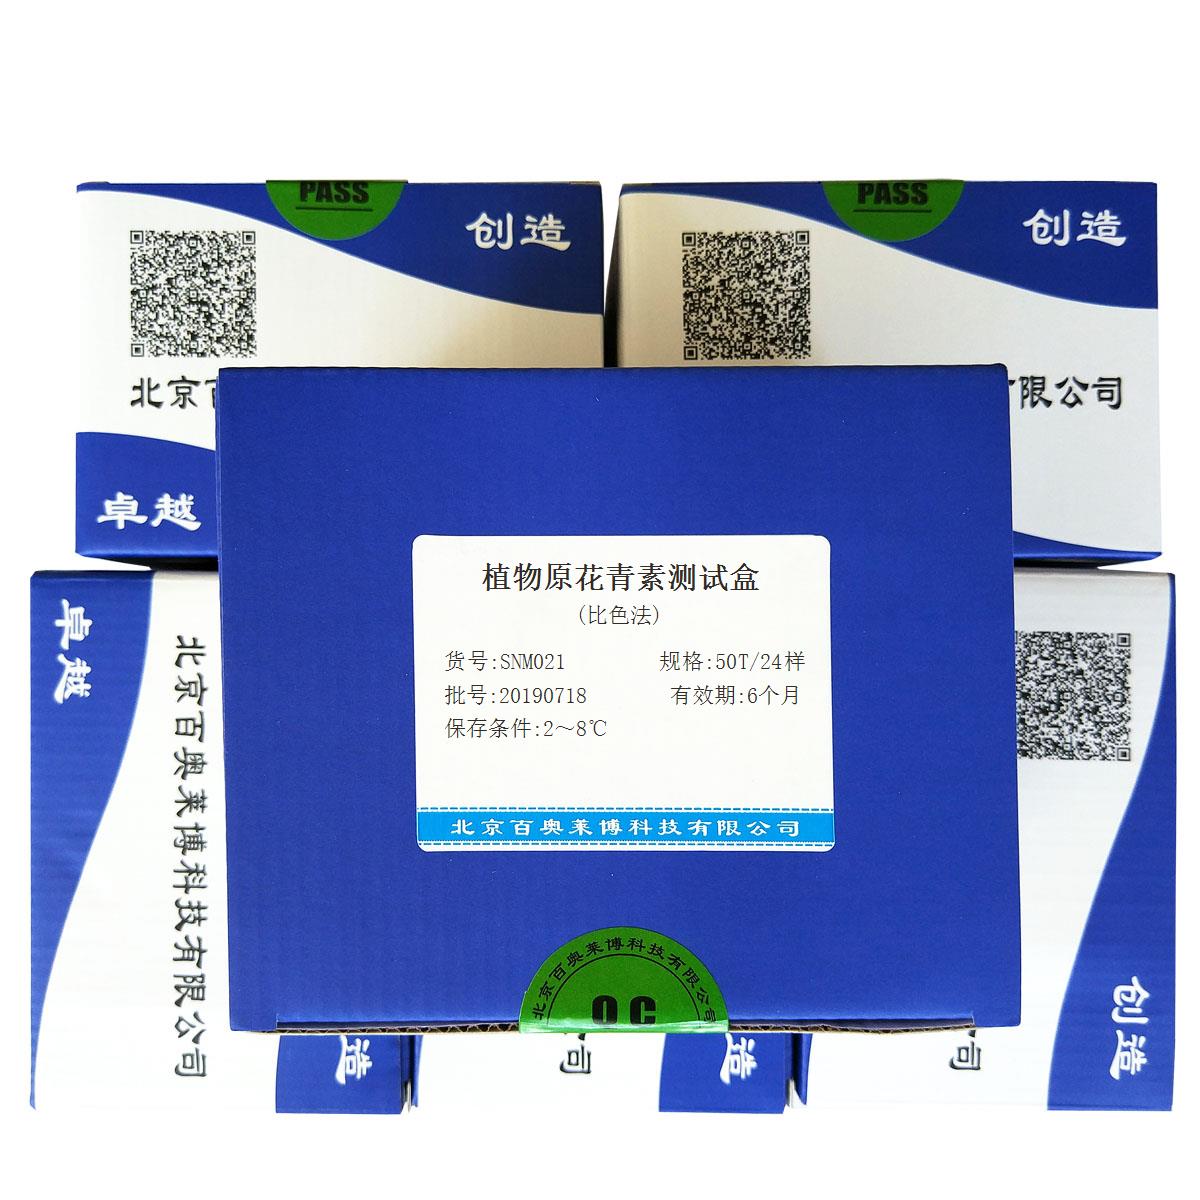 植物原花青素测试盒(比色法)北京供应商